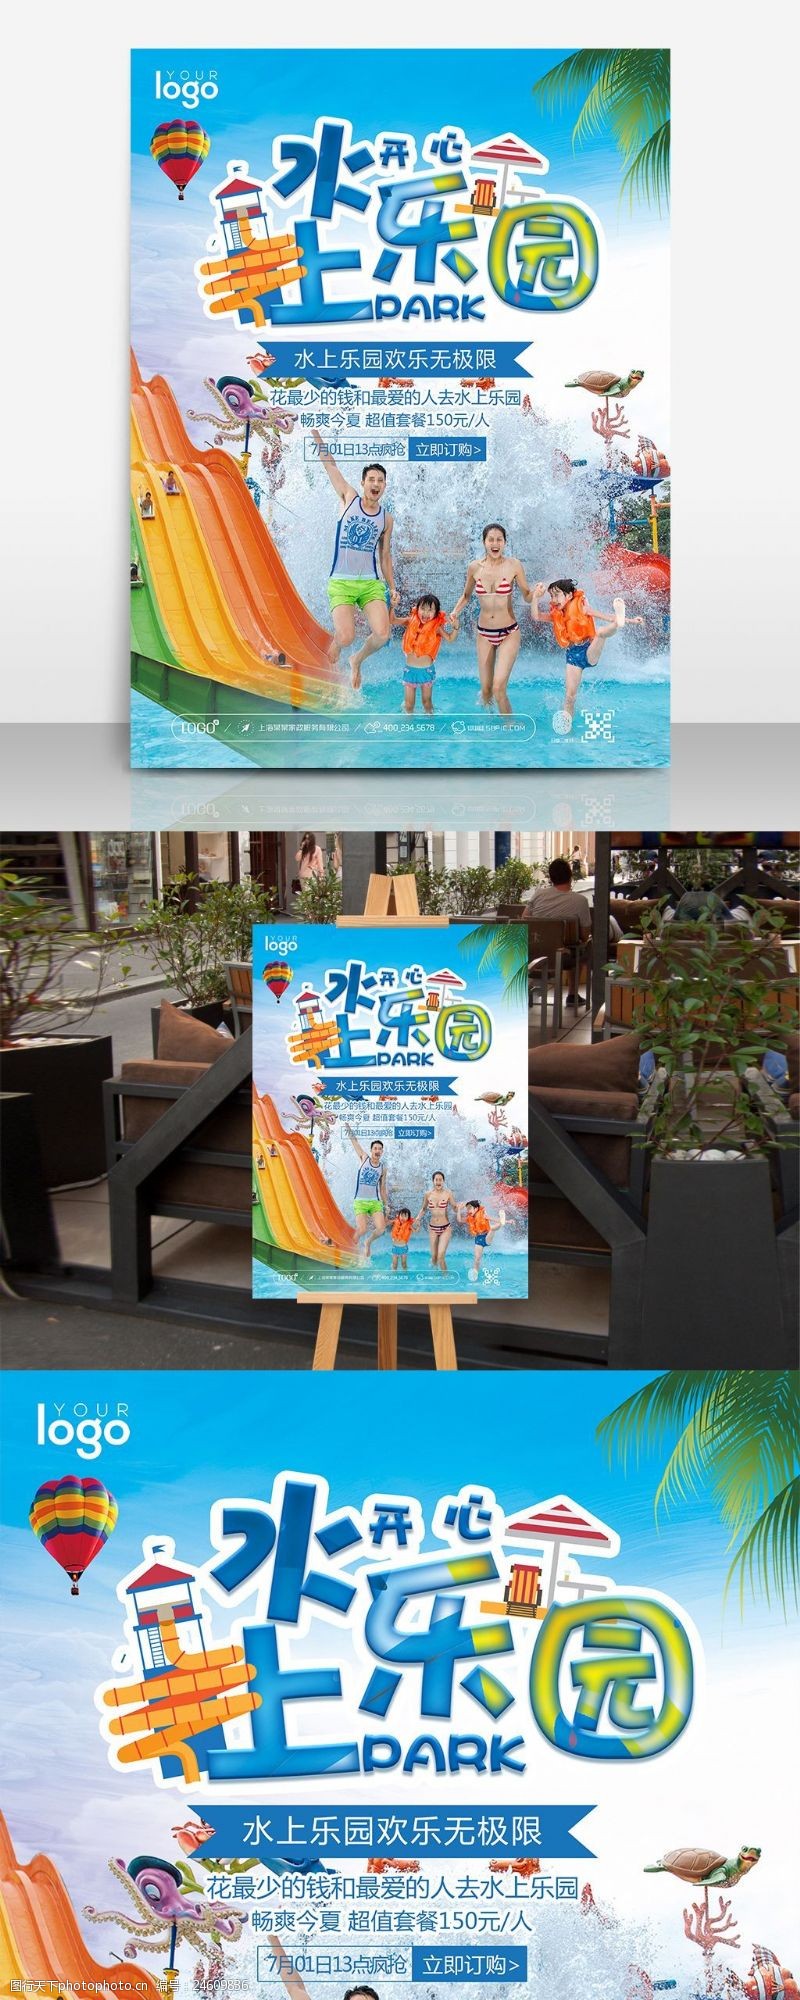 海上运动夏日欢乐水上乐园旅游促销海报